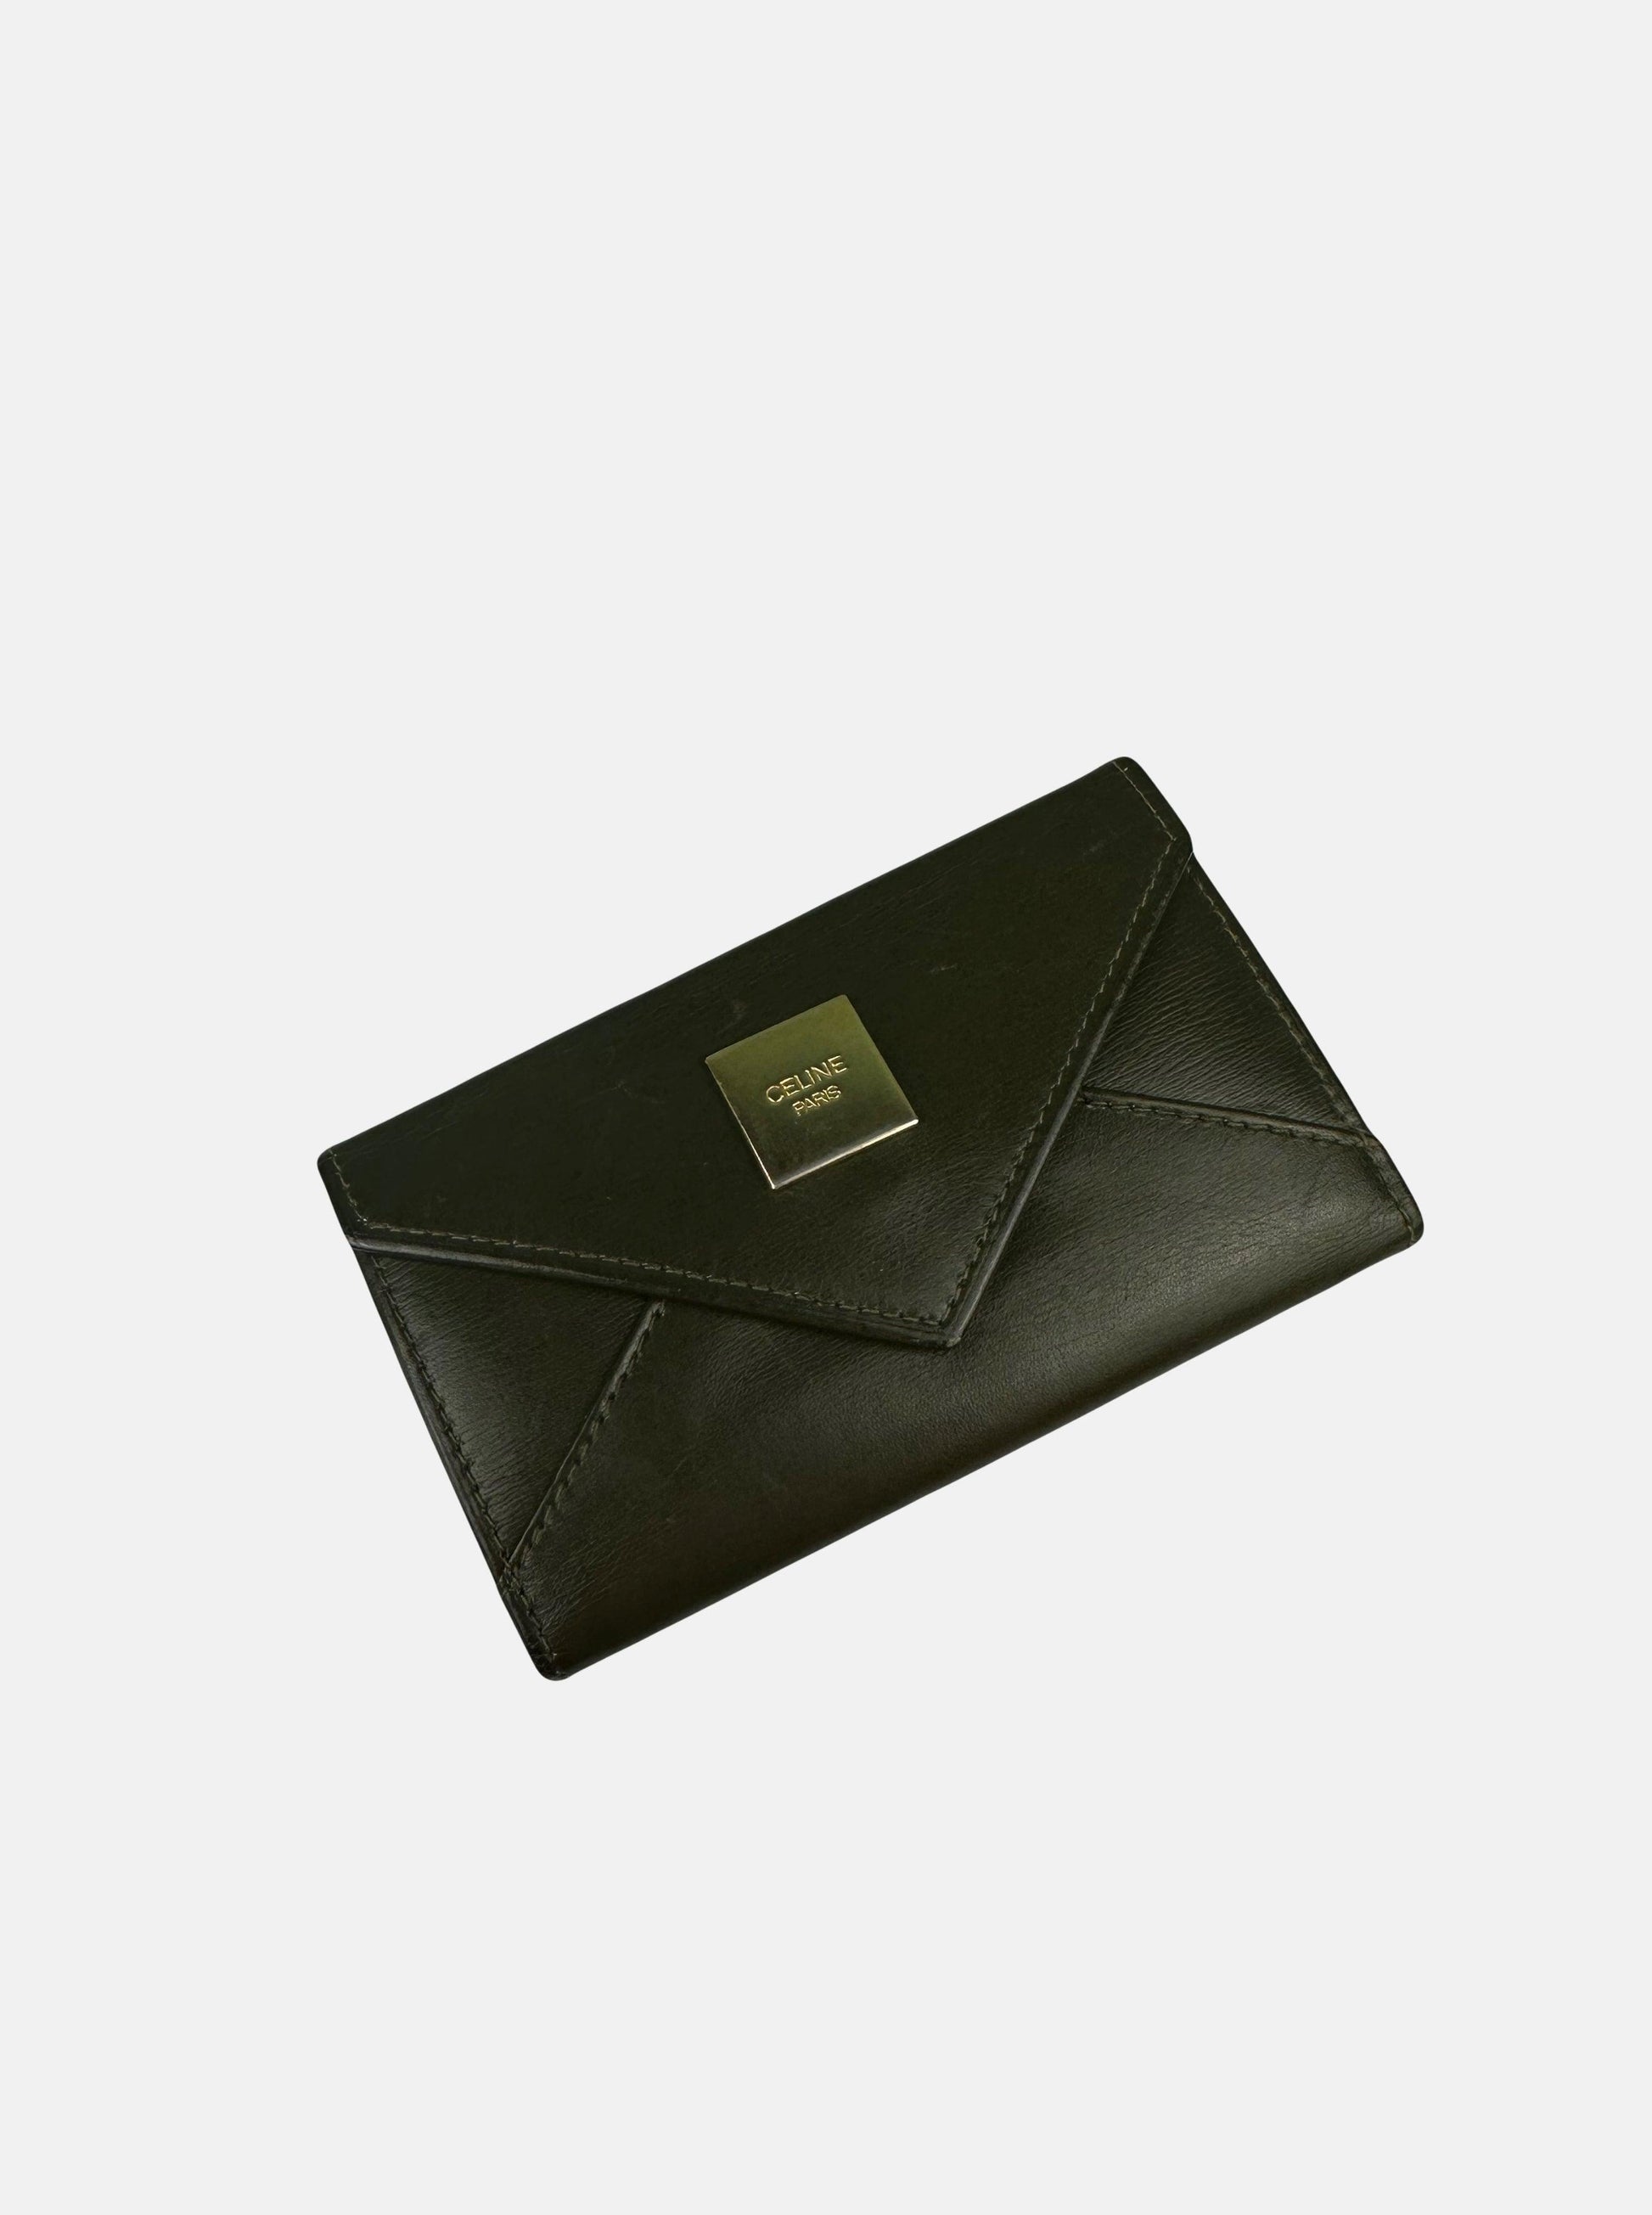 Olive Green Leather Trifold Key Holder - Zage Vintage